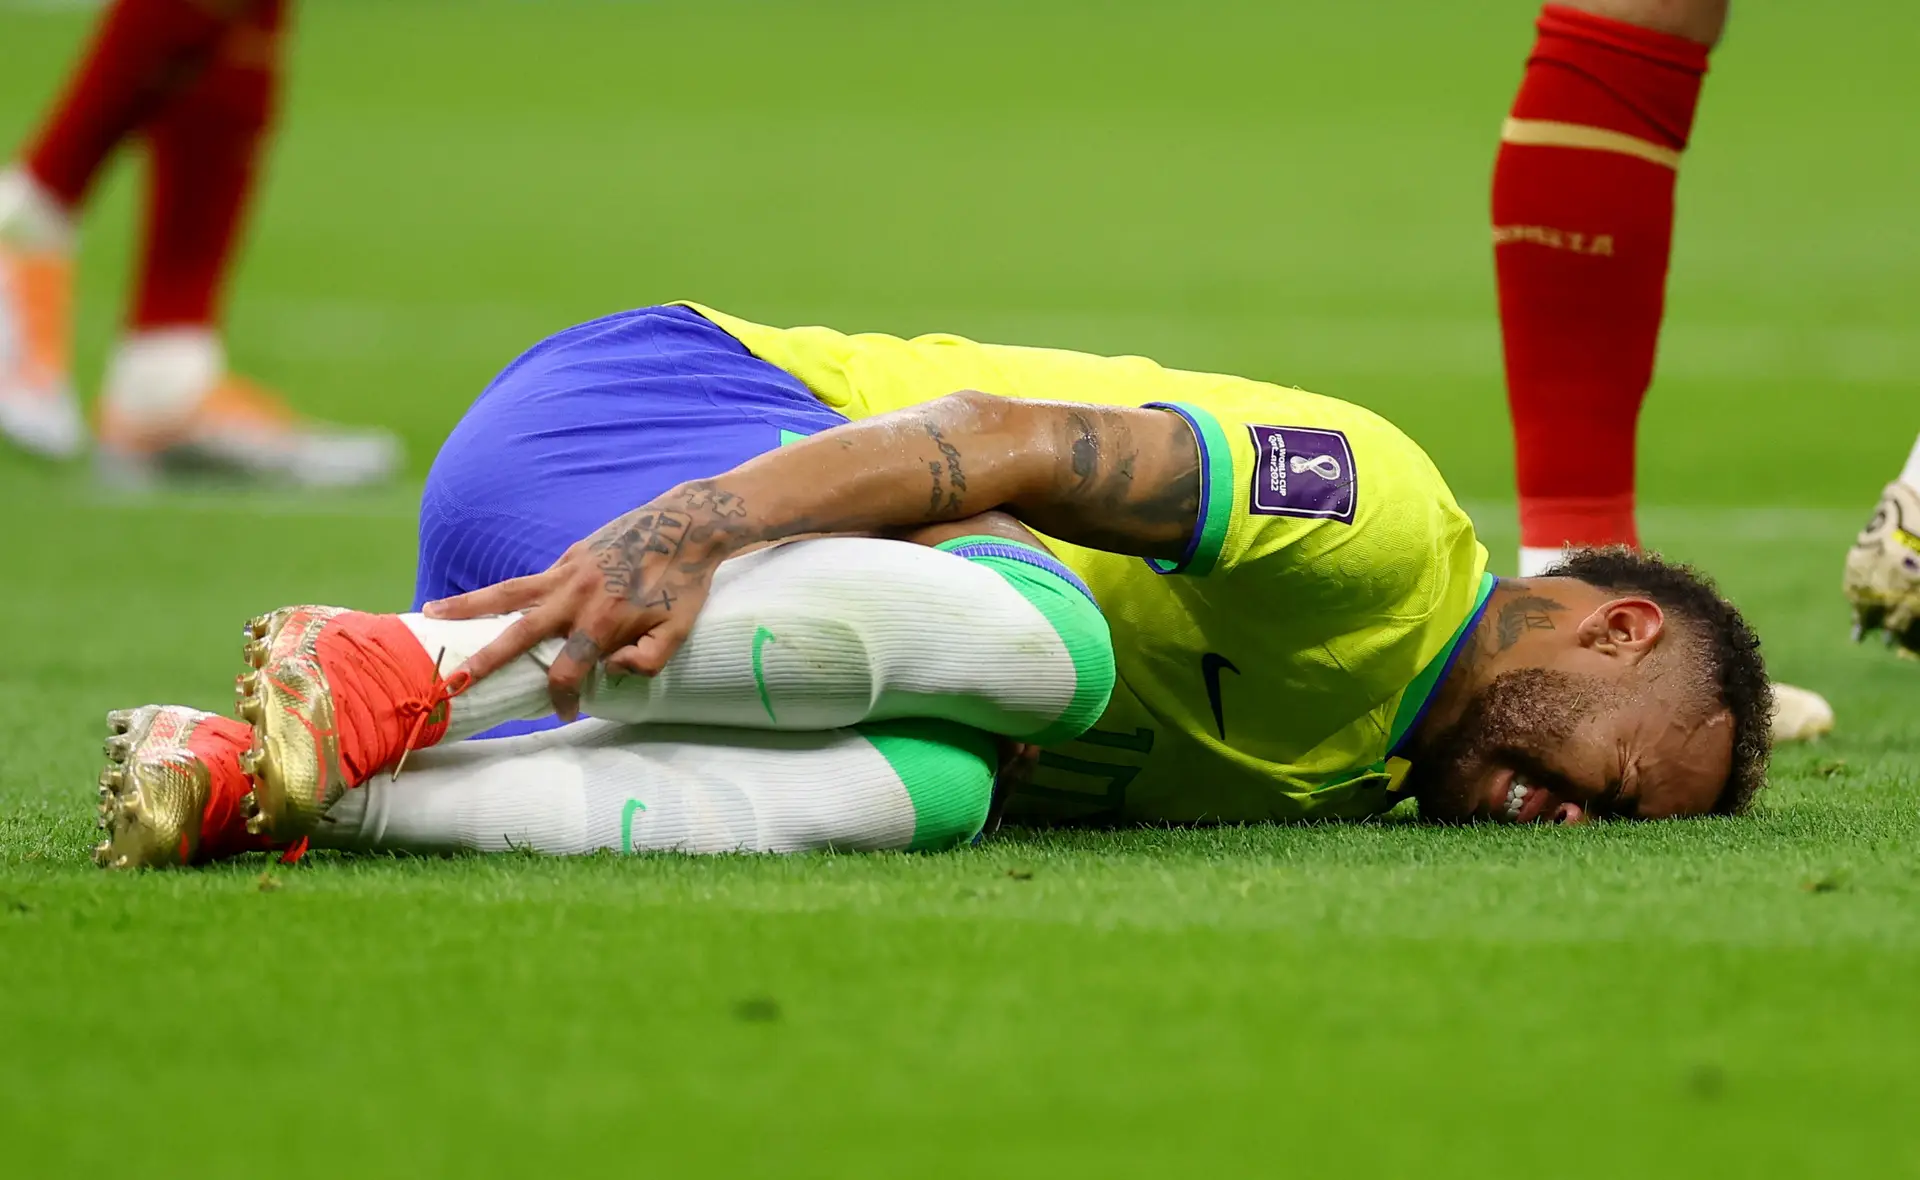 Soam os alarmes na seleção brasileira: Neymar lesionado, médicos tentam "perceber gravidade"